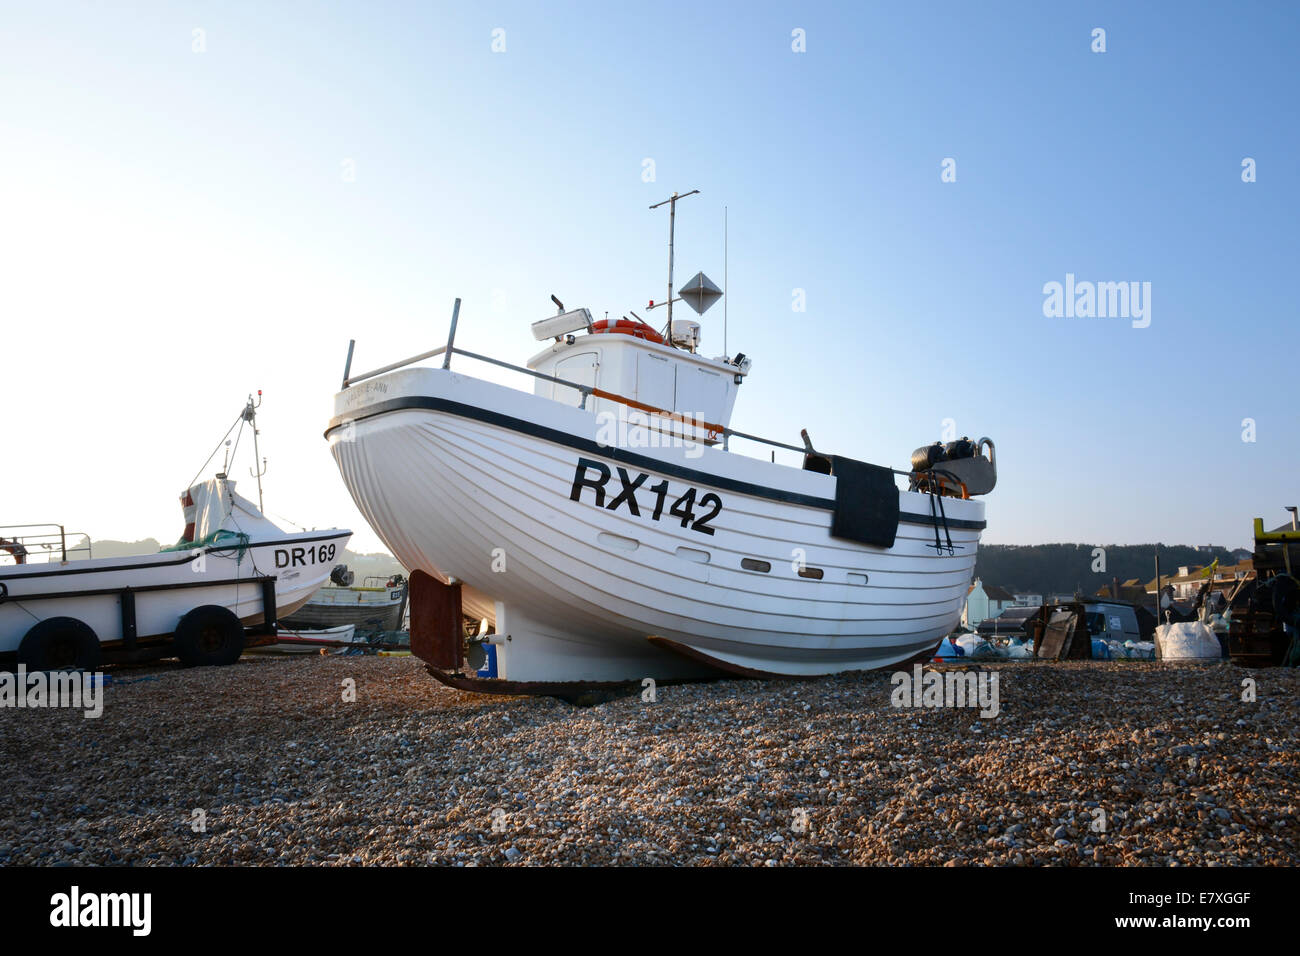 Barche di pescatori sulla spiaggia da Rock-a-strada Nore, Stade, Hastings, East Sussex, Regno Unito Foto Stock